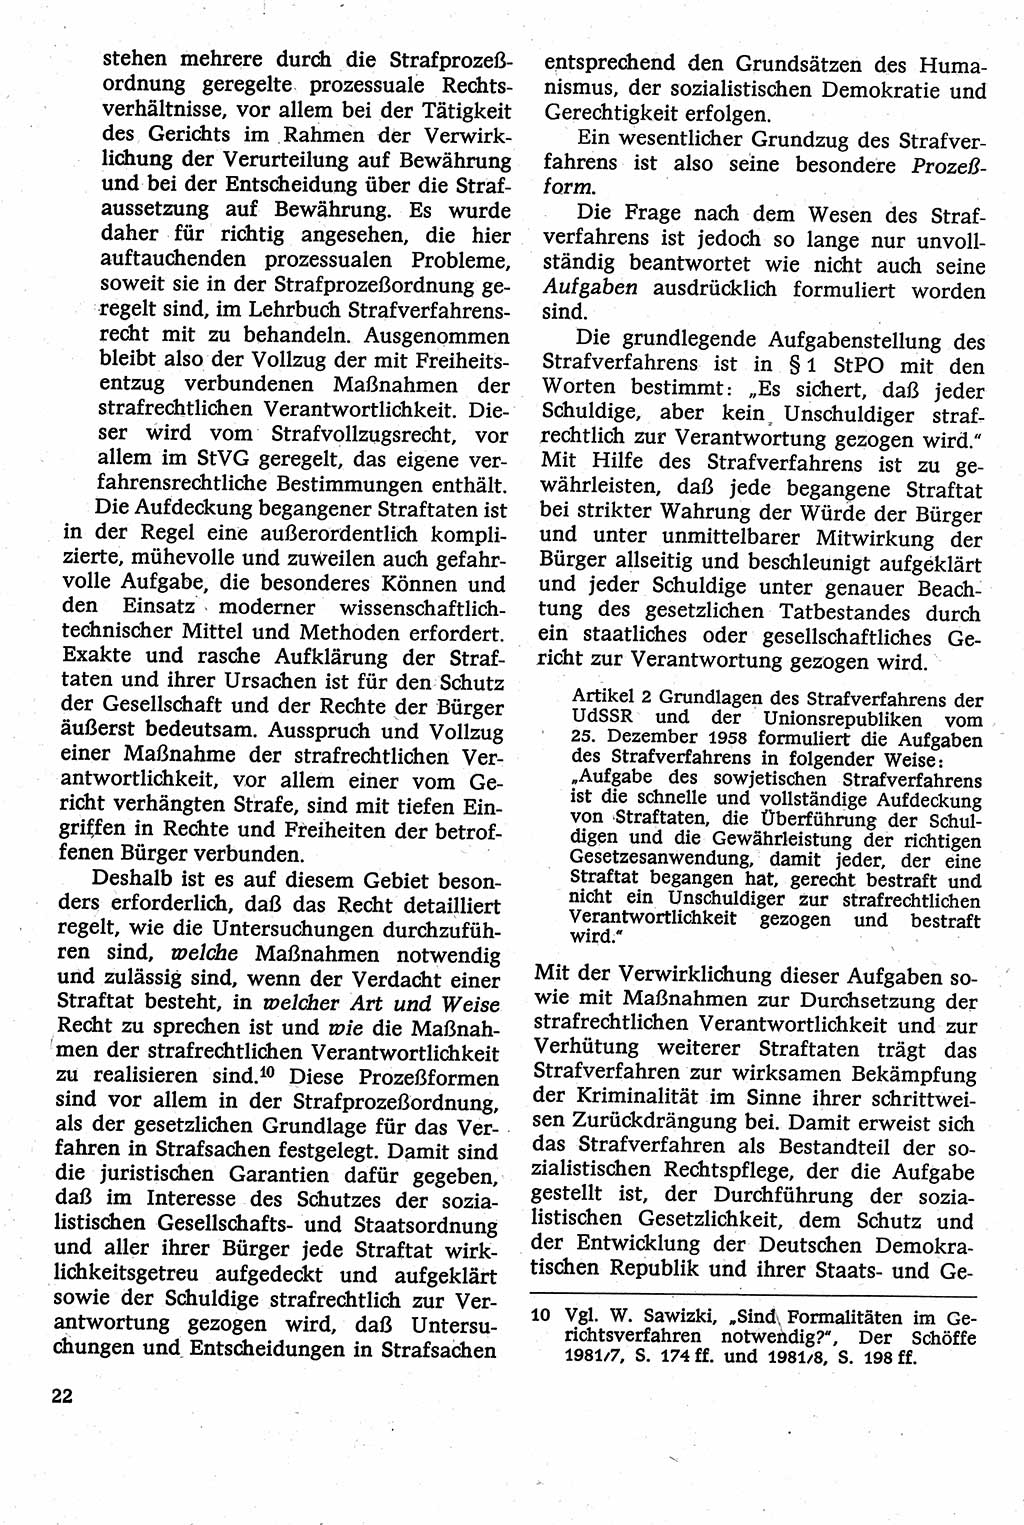 Strafverfahrensrecht [Deutsche Demokratische Republik (DDR)], Lehrbuch 1982, Seite 22 (Strafverf.-R. DDR Lb. 1982, S. 22)